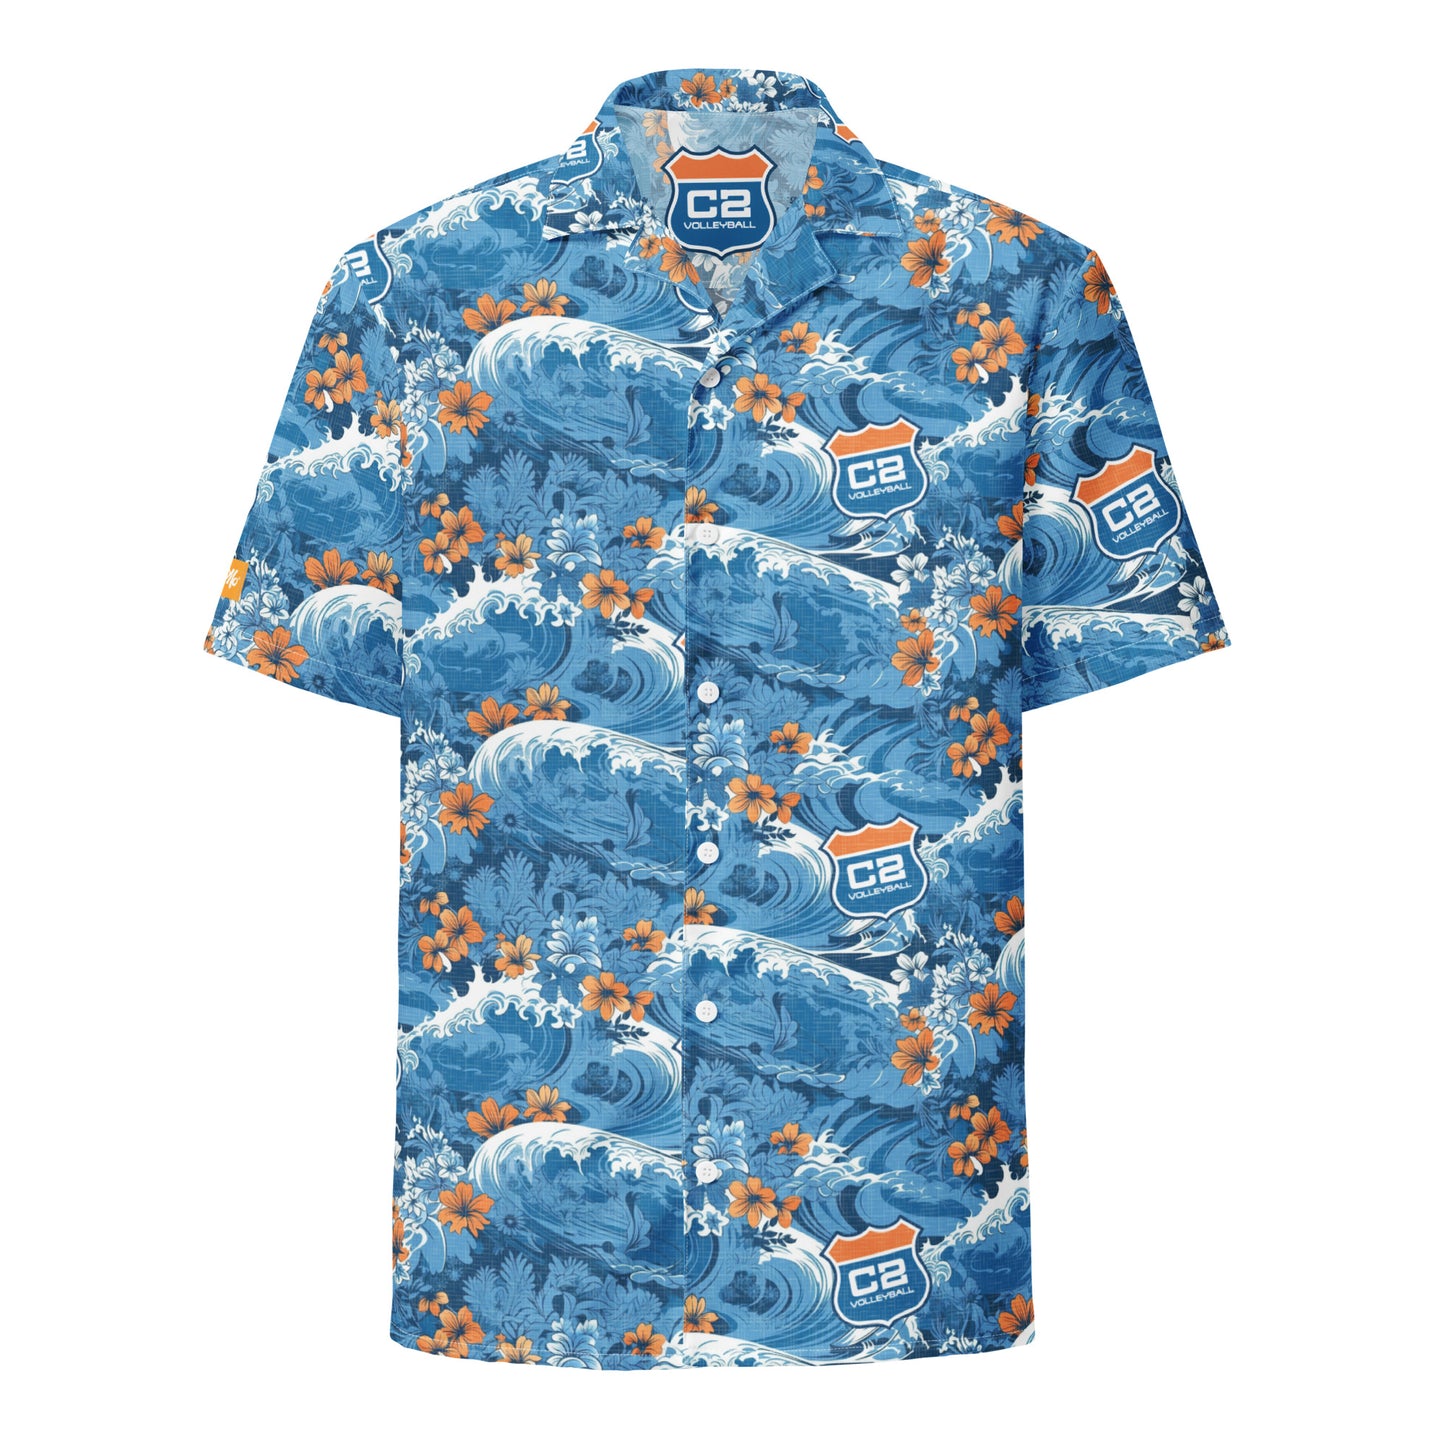 C2 Makin' Waves Aloha Shirt